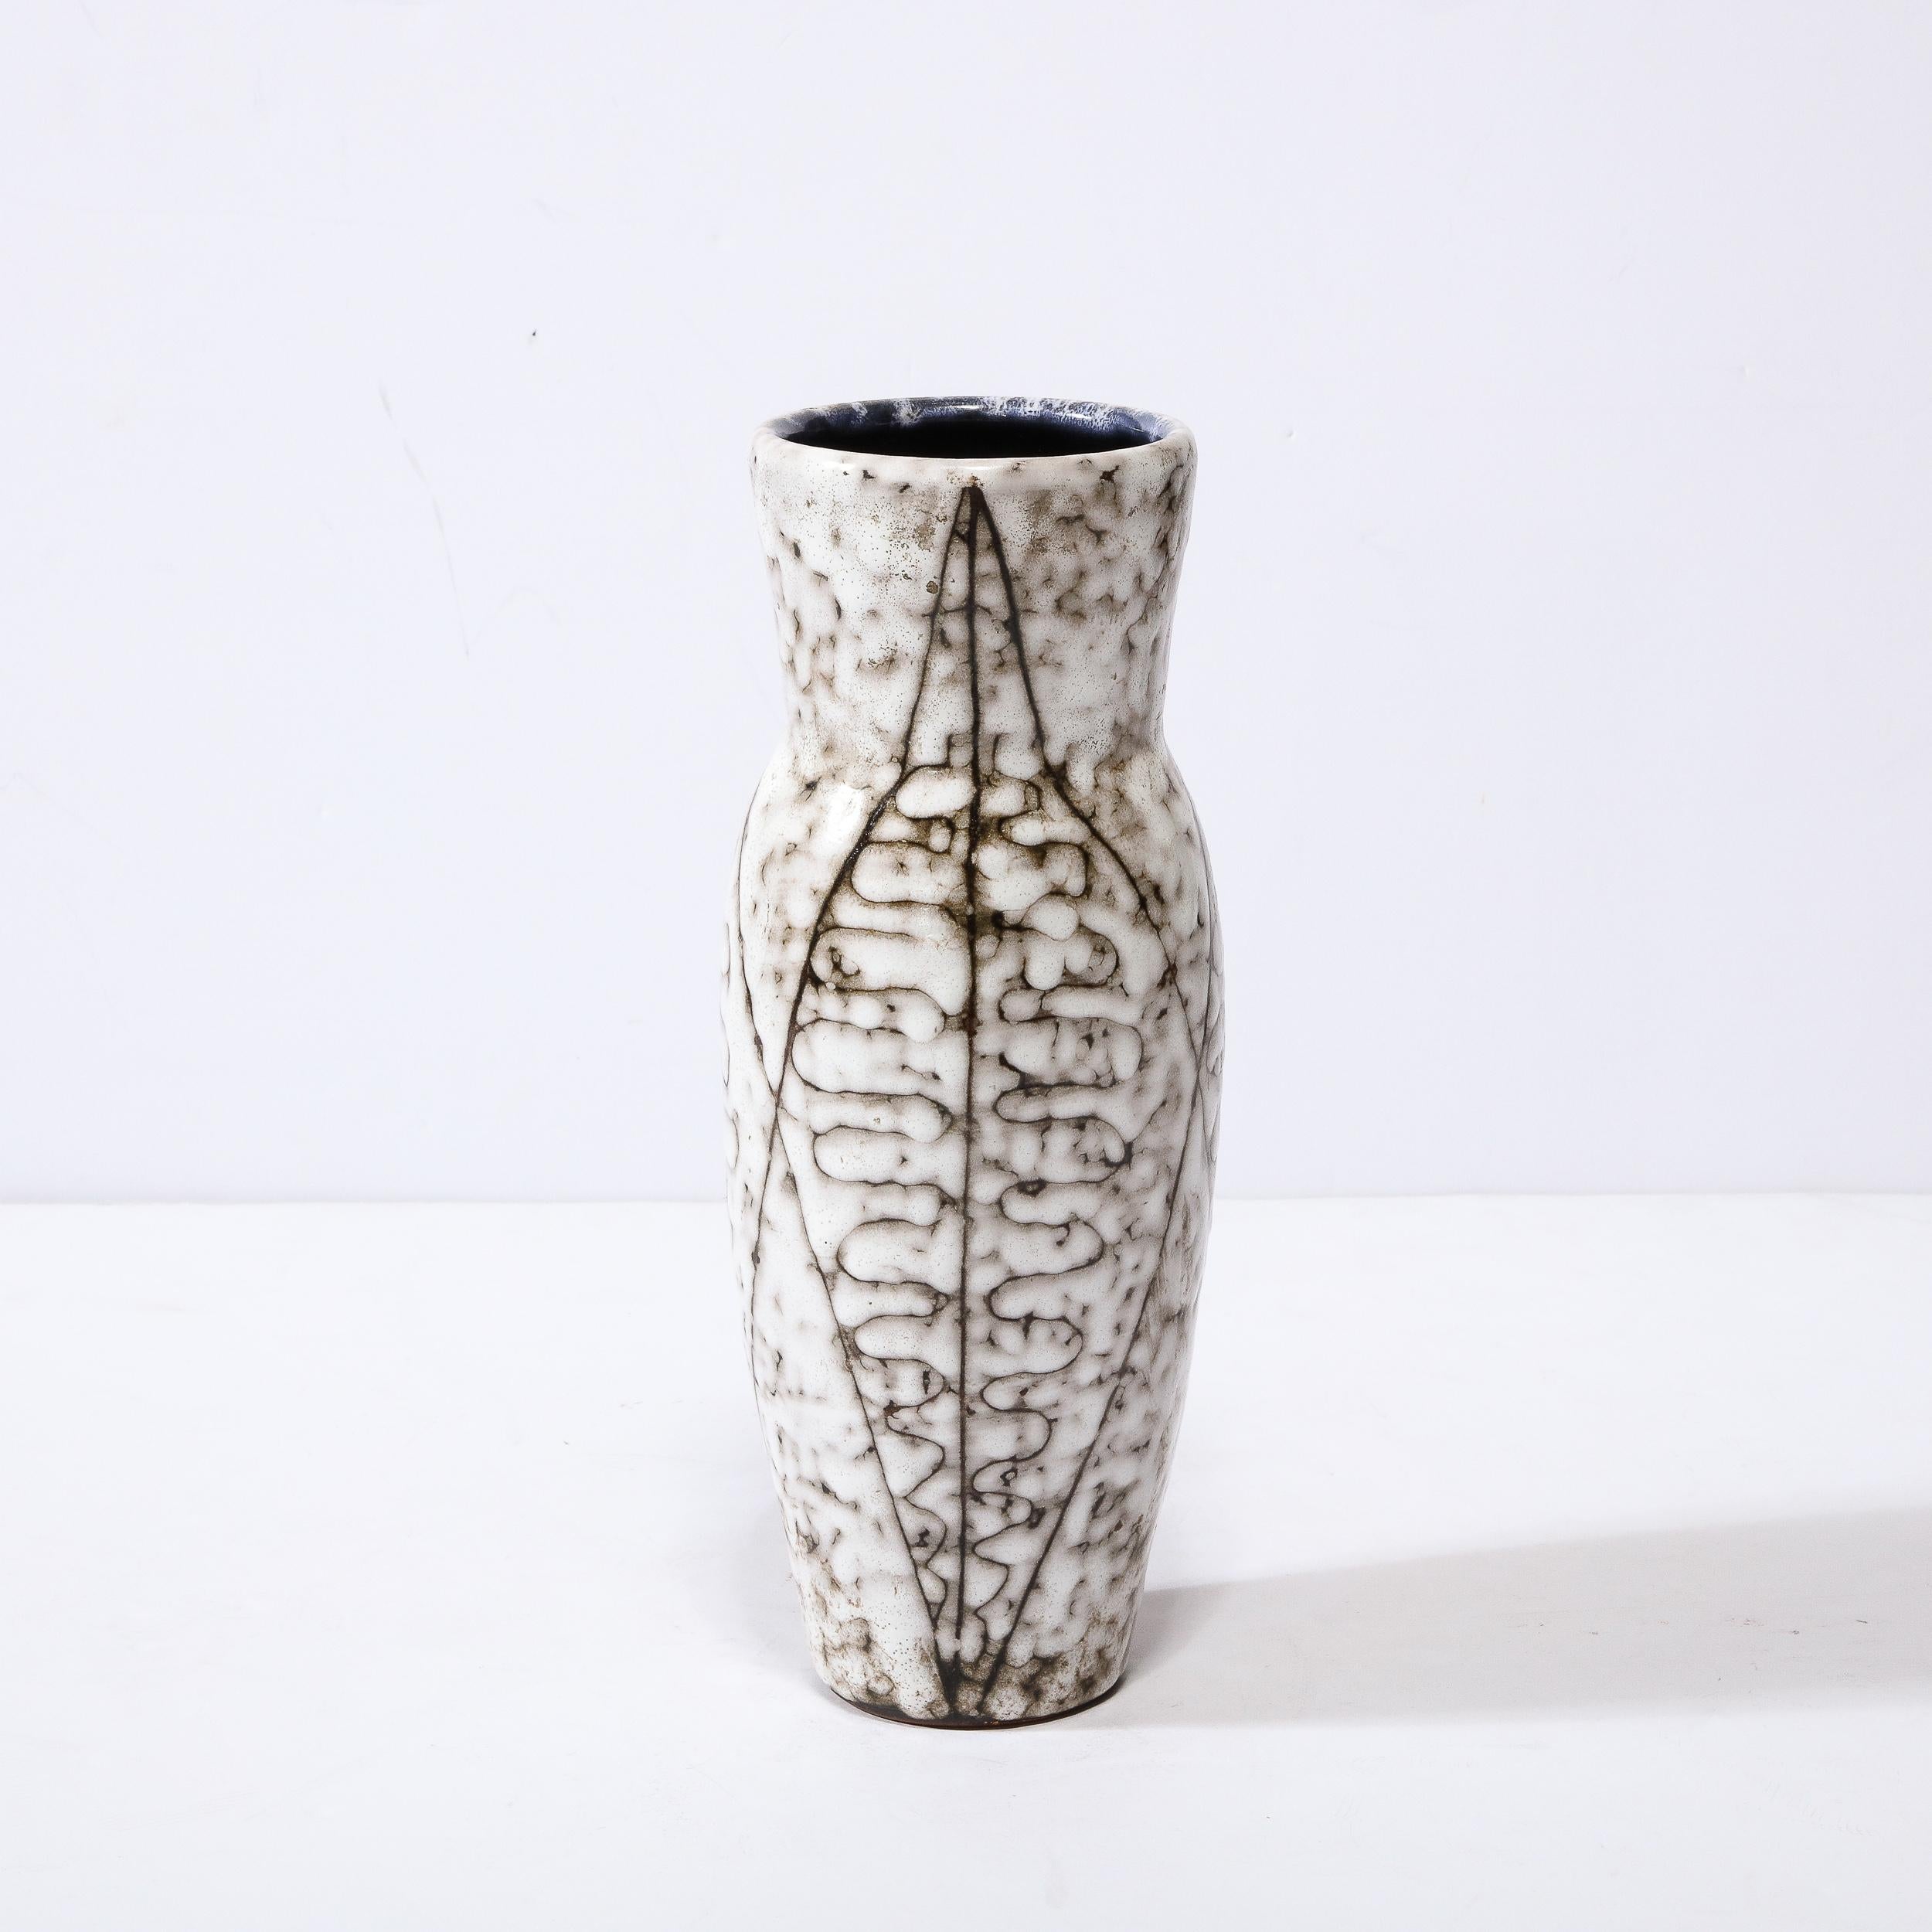 Diese Vase aus weißer und erdfarbener Keramik mit Blattmotiv ist ein schönes Beispiel für europäische Nachkriegskeramik, die um 1960 in Hódmezovasarhely Majolikagyár, Ungarn, hergestellt wurde. Die Oberfläche jeder Vase hat eine atemberaubende